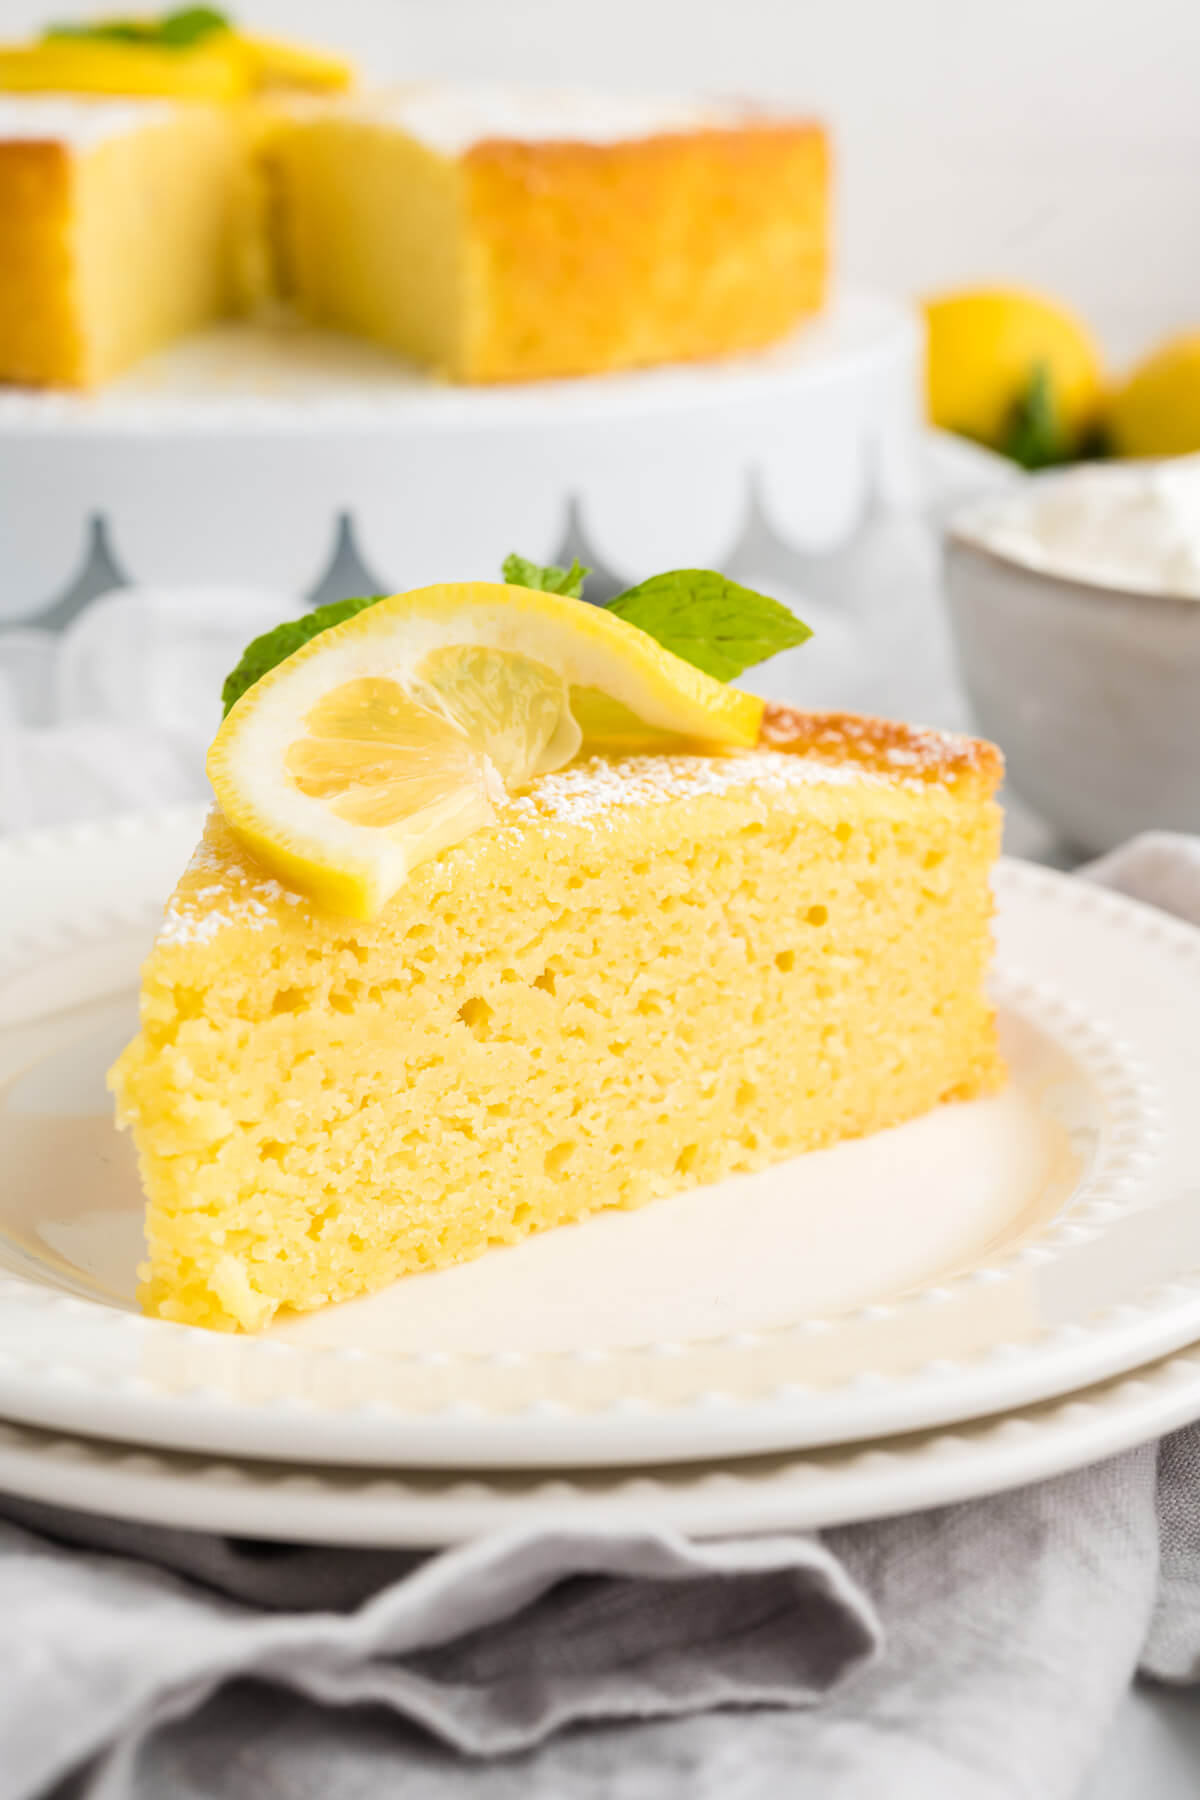 lemon ricotta cake garnished with a lemon slice and mint sprig.